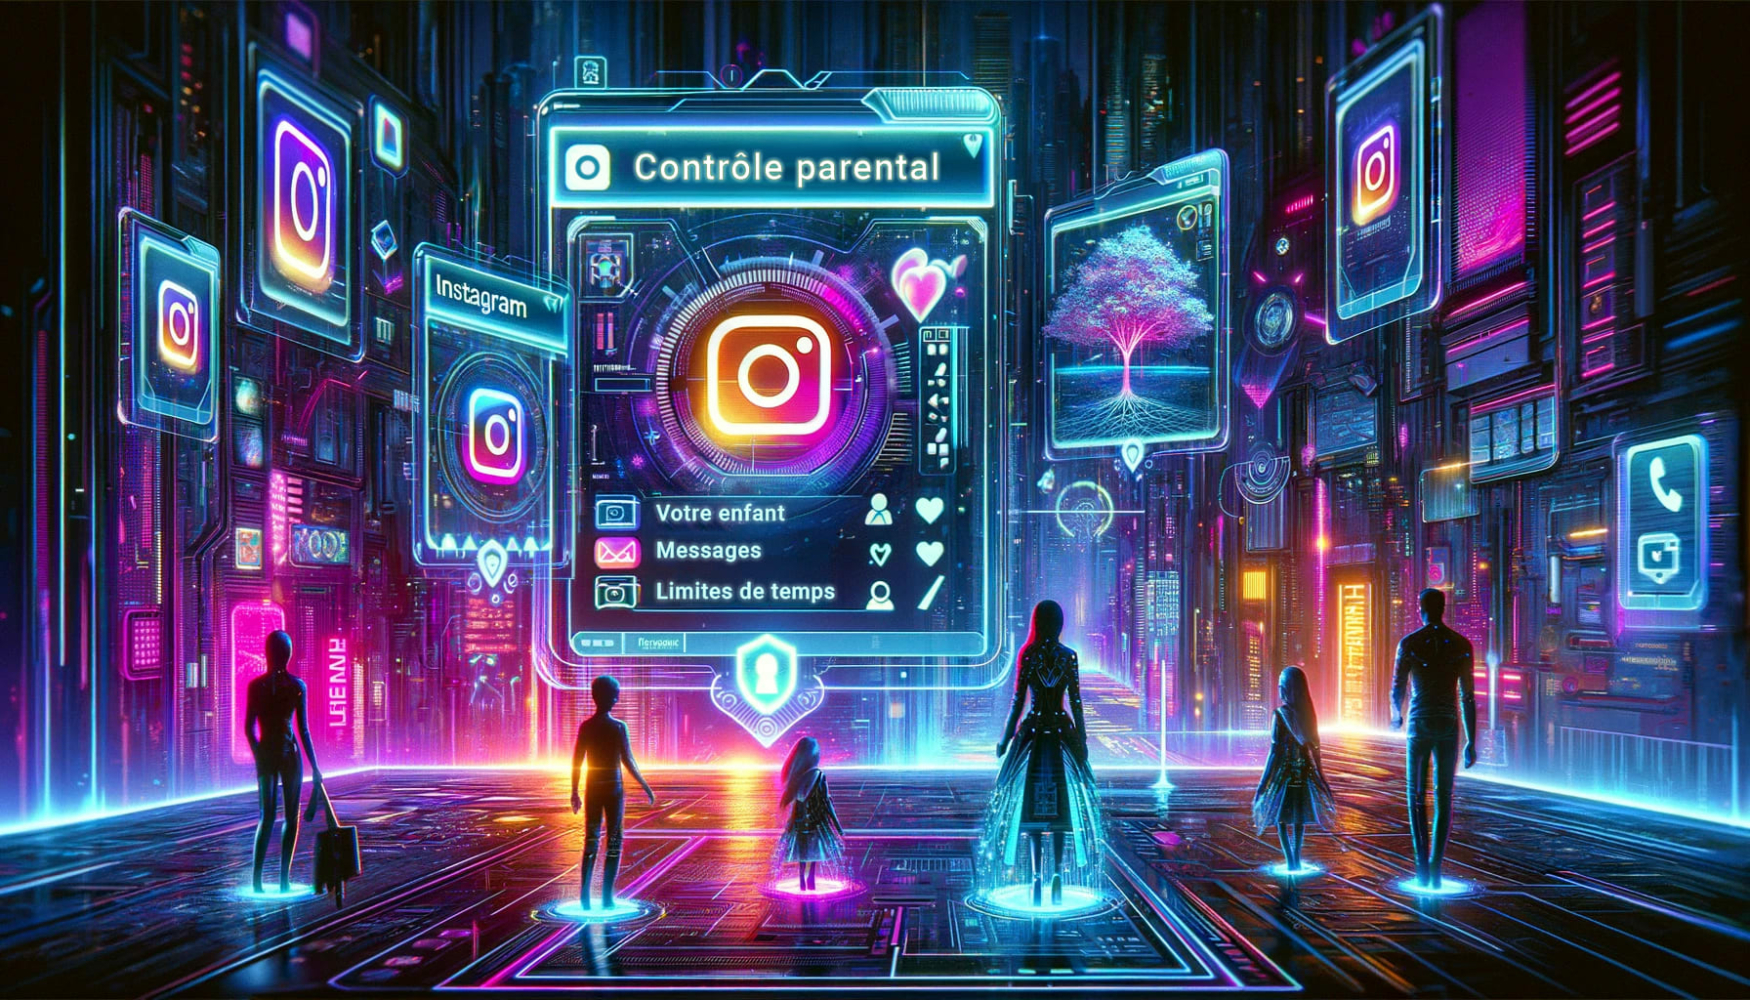 Trois adultes et trois enfants debout dans l'écosystème d'instagram devant de grands écrans lumineux avec des logos d'instagram et le plus grand révélant des informations sur le contrôle parental